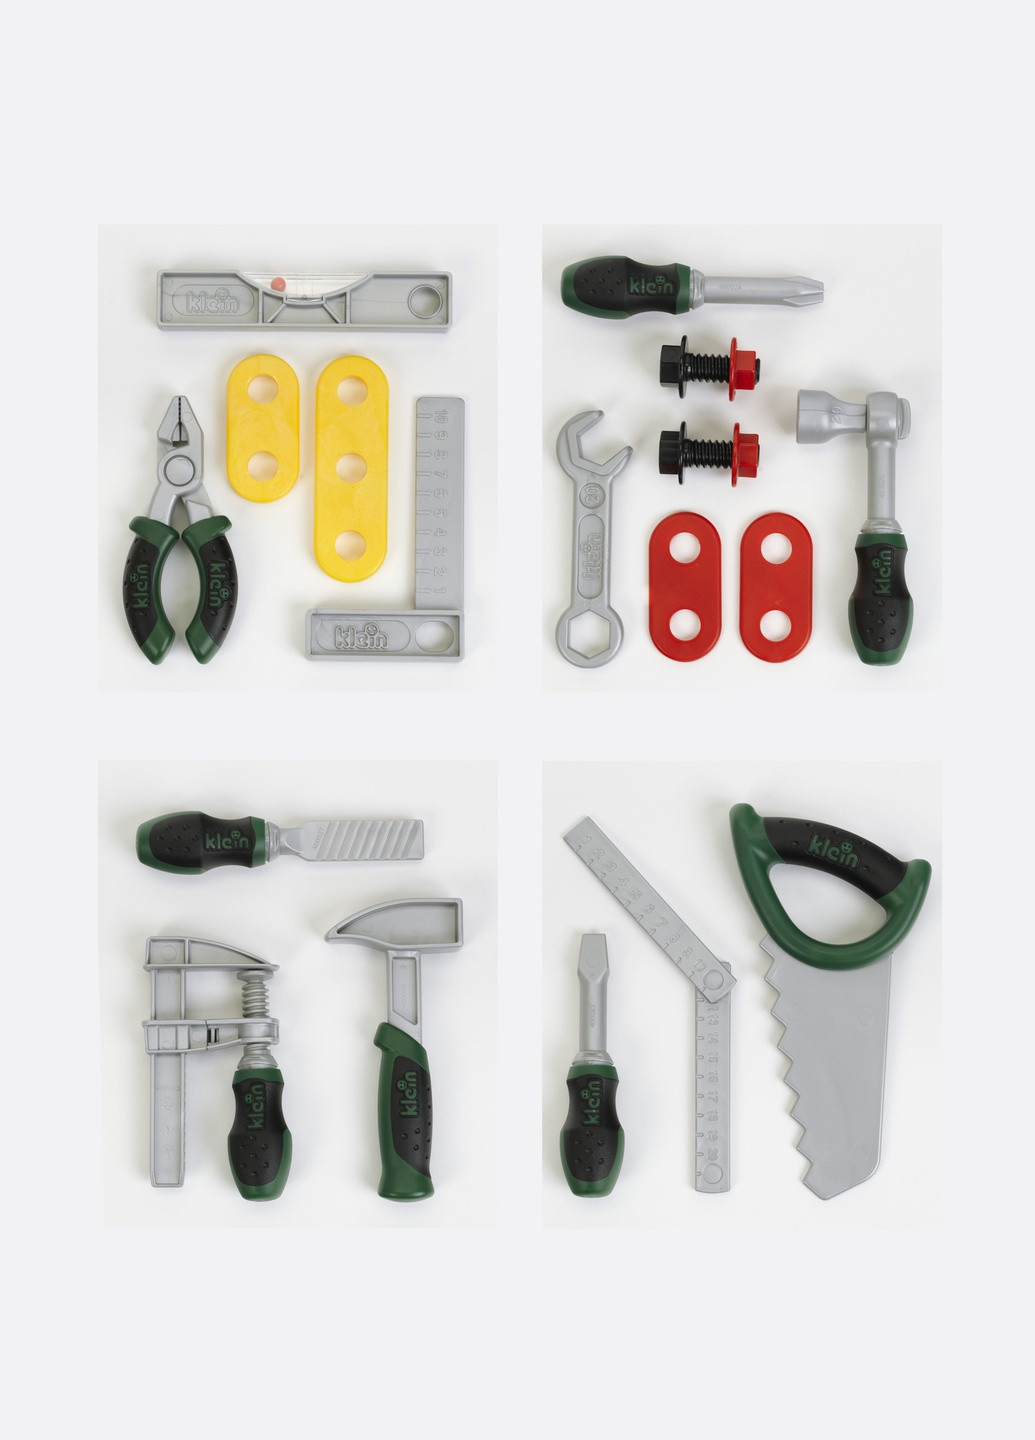 Іграшковий набір інструментів Klein 1 з 4х секцій 8007C (9055) Bosch (263433507)